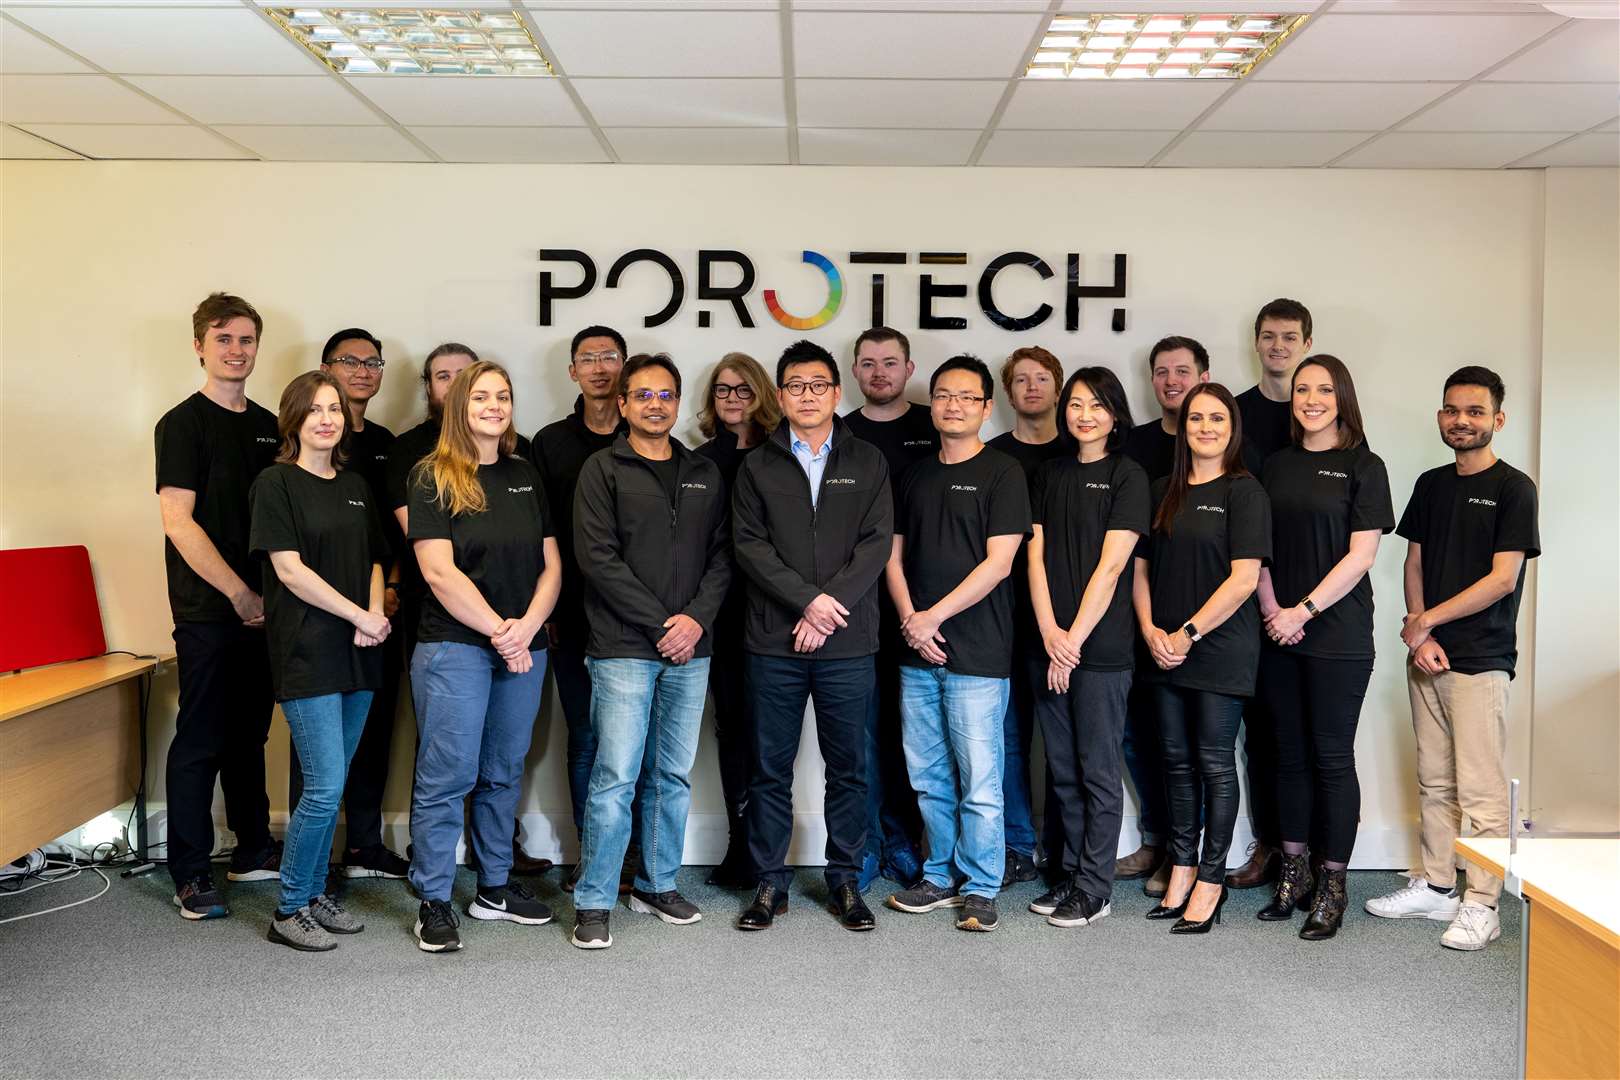 The Porotech team